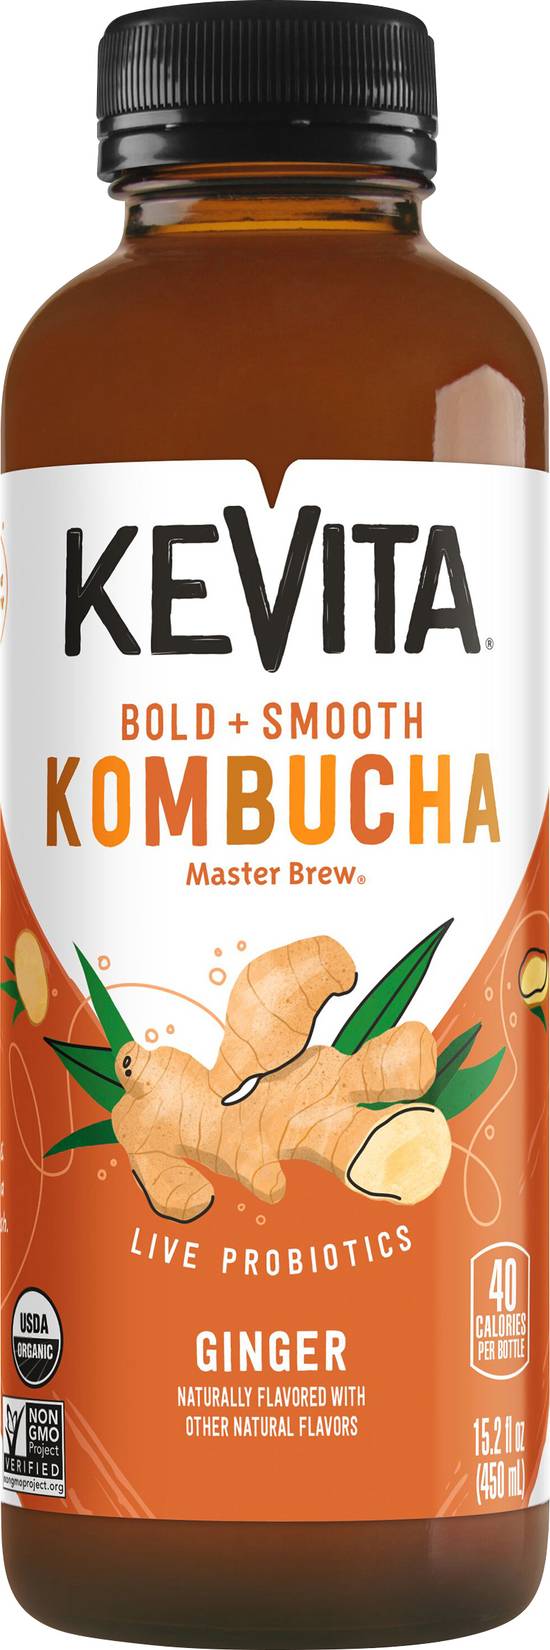 Kevita Master Brew Ginger Kombucha (15.2 fl oz)